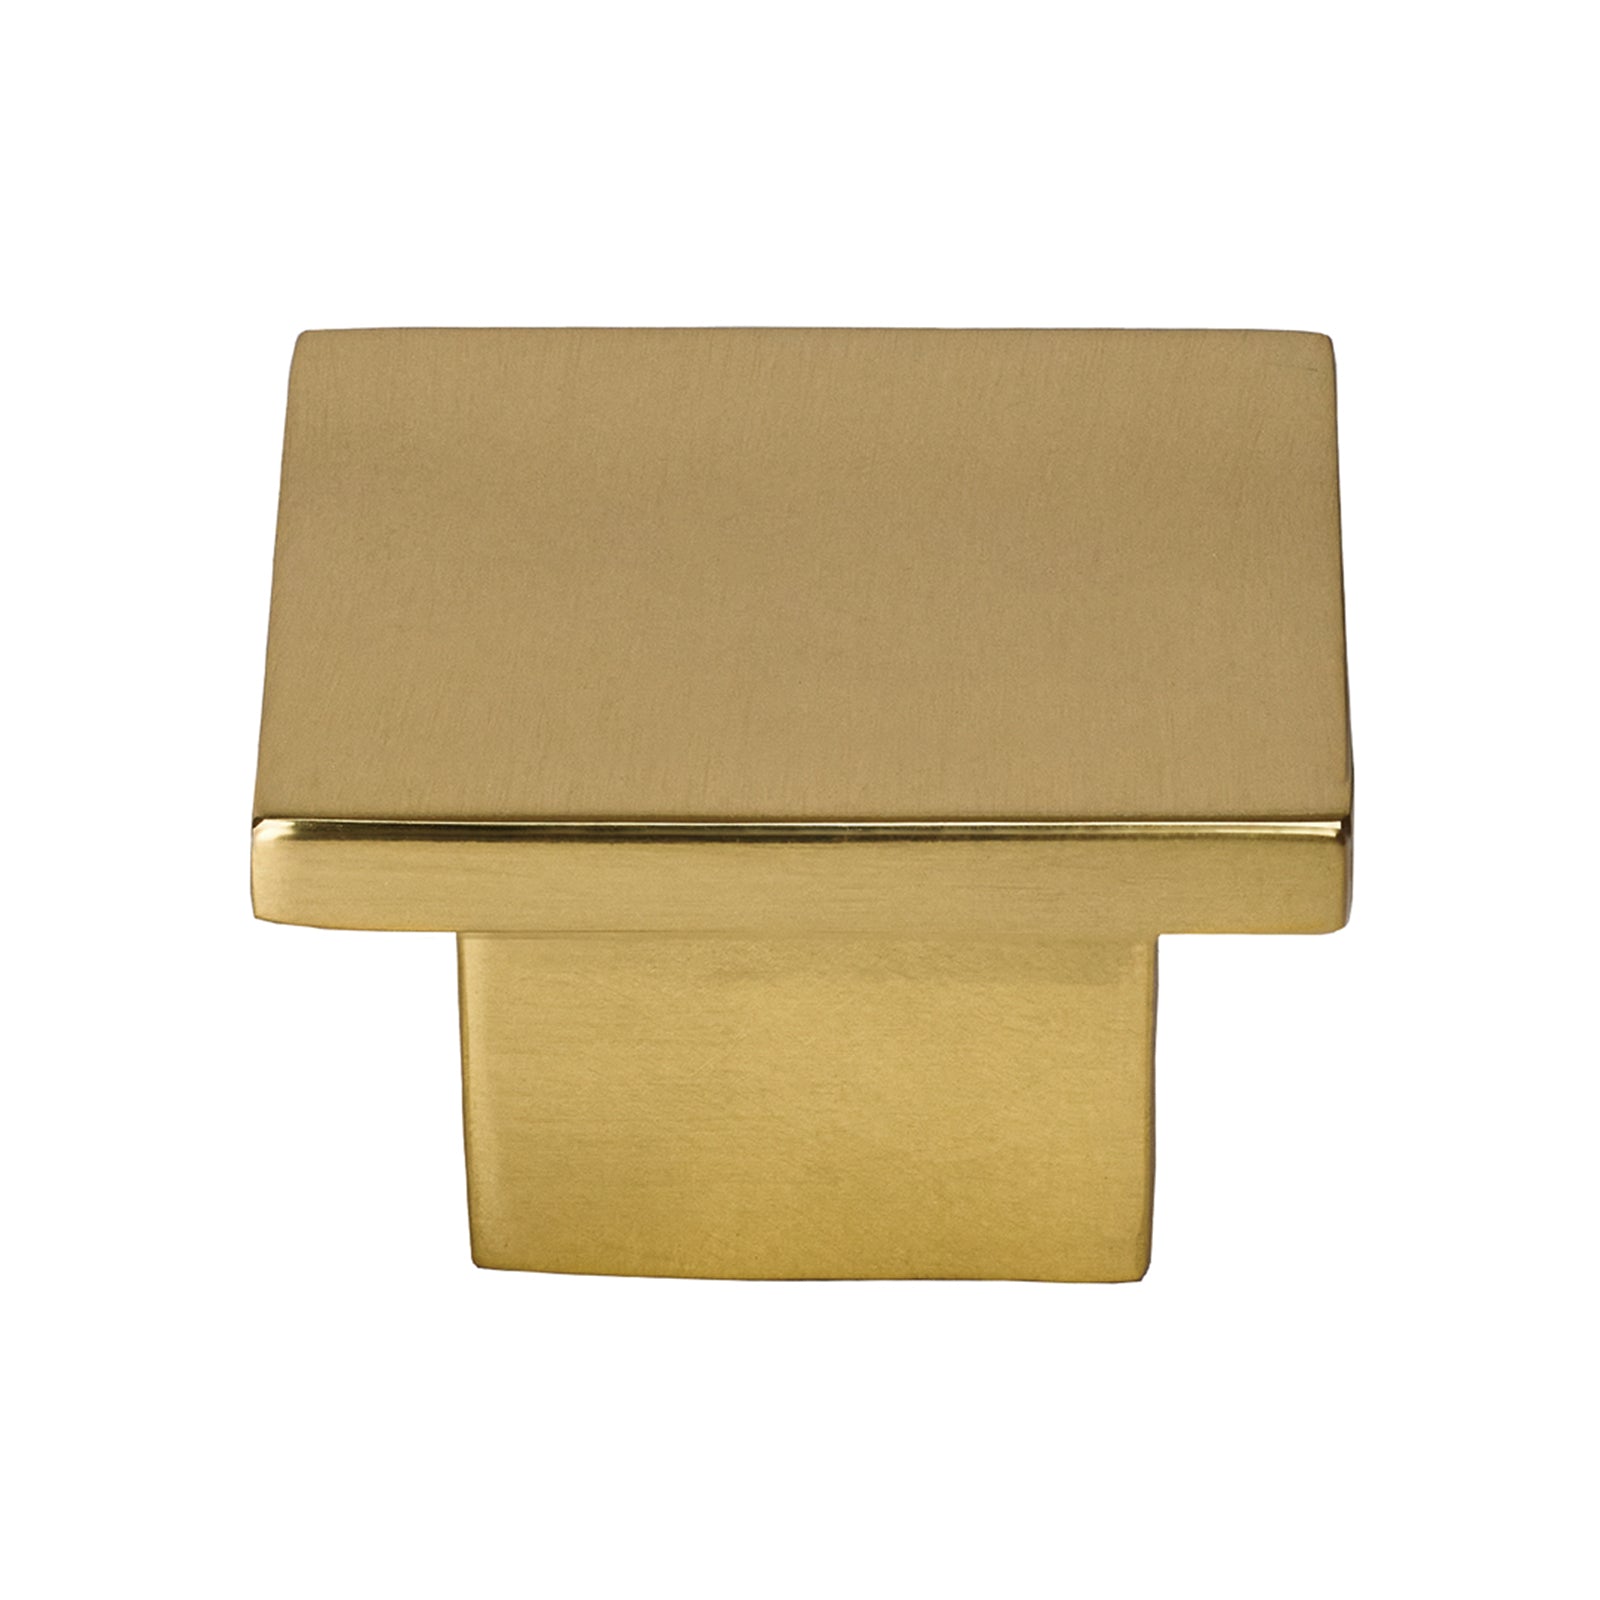 brass square cupboard knob, kitchen cabinet hardware